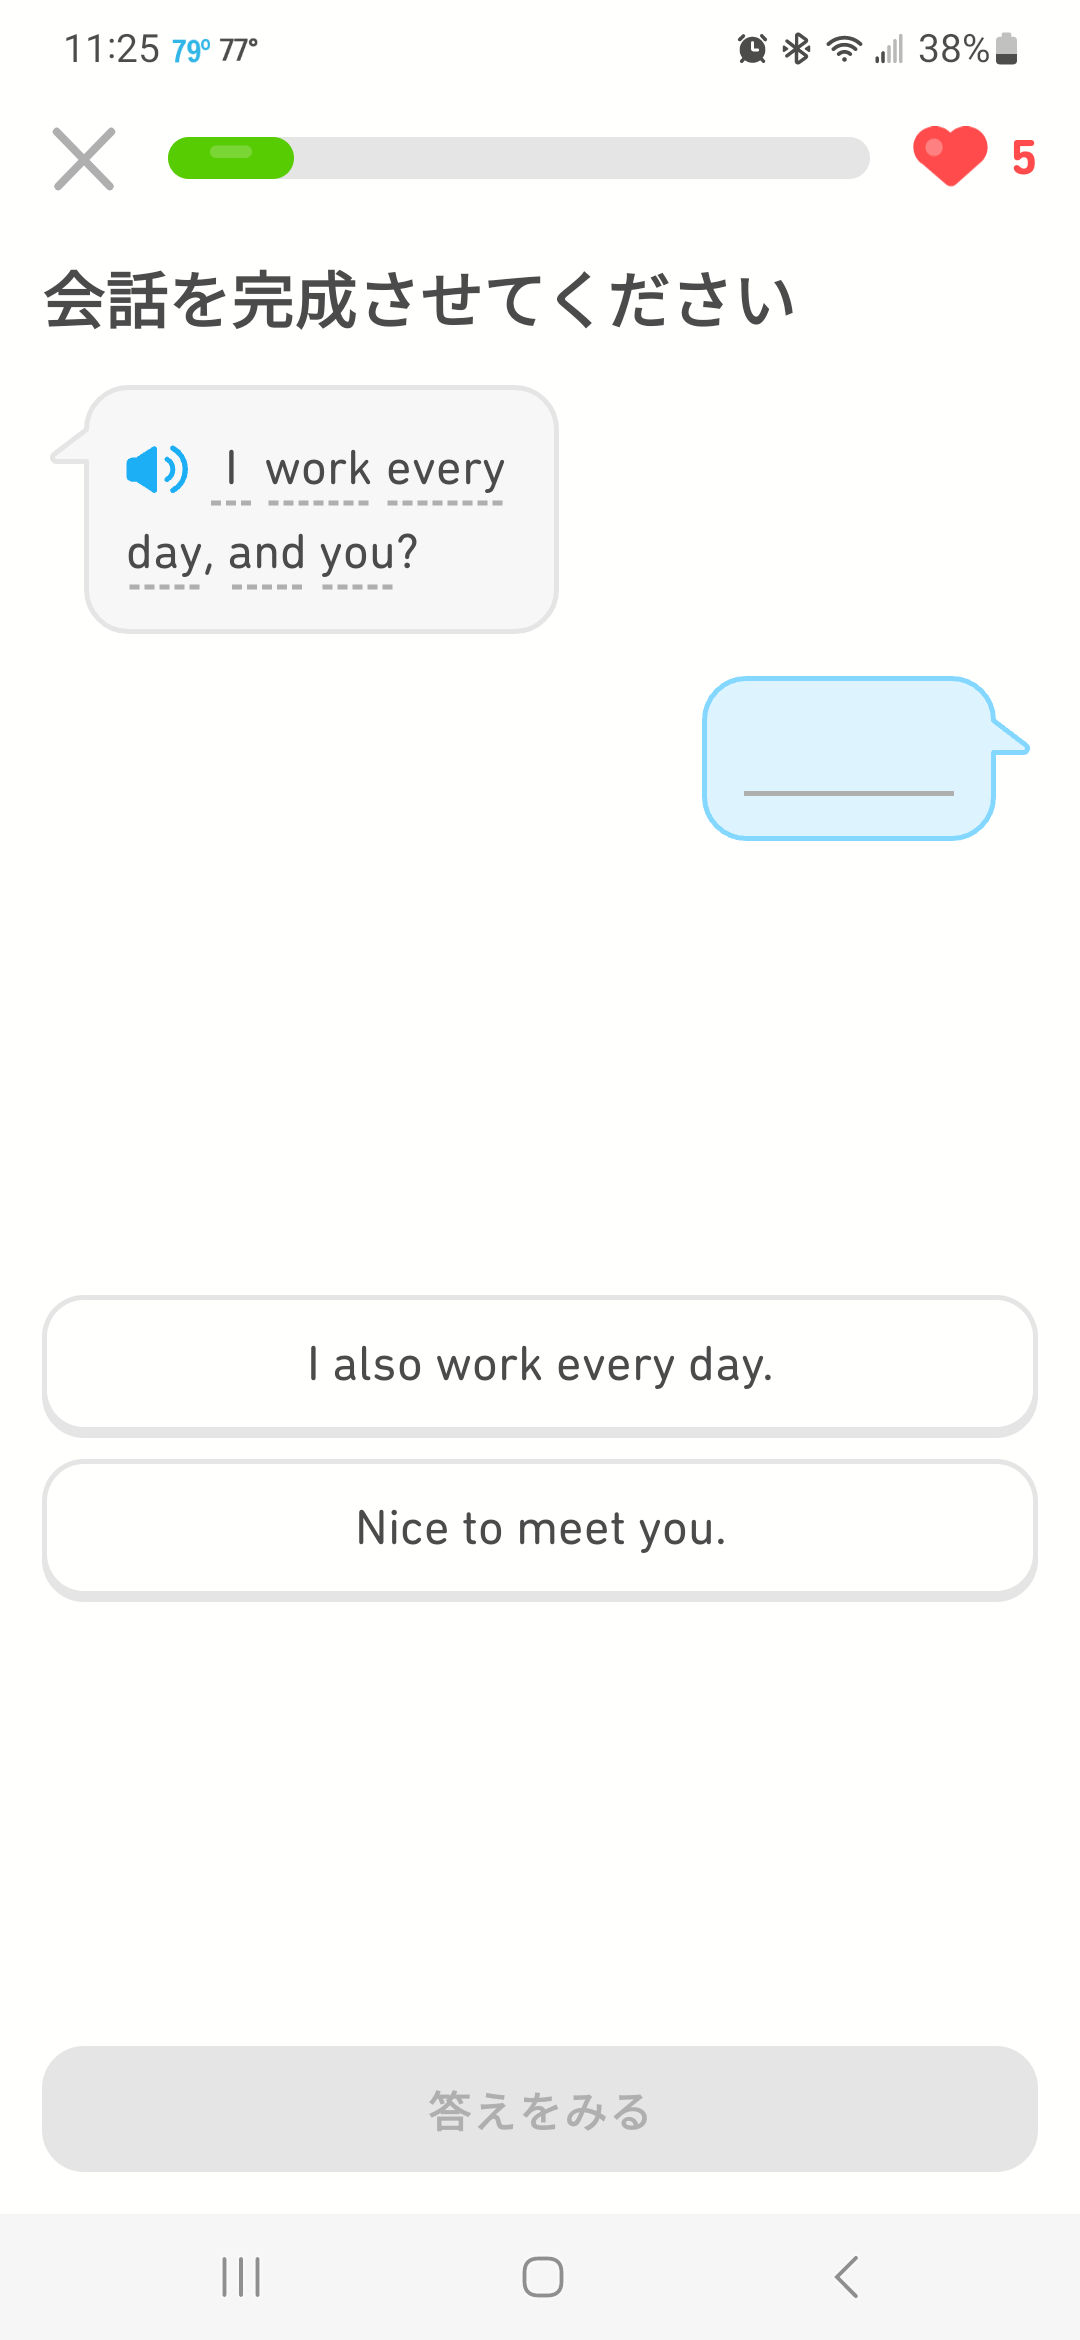 会話文空所補充問題の画像：「I work every day. Are you?」という会話文の下に、空欄の吹き出しがあり、その下に「I also work every day.」と「Nice to meet you.」が選択肢として表示されている。
